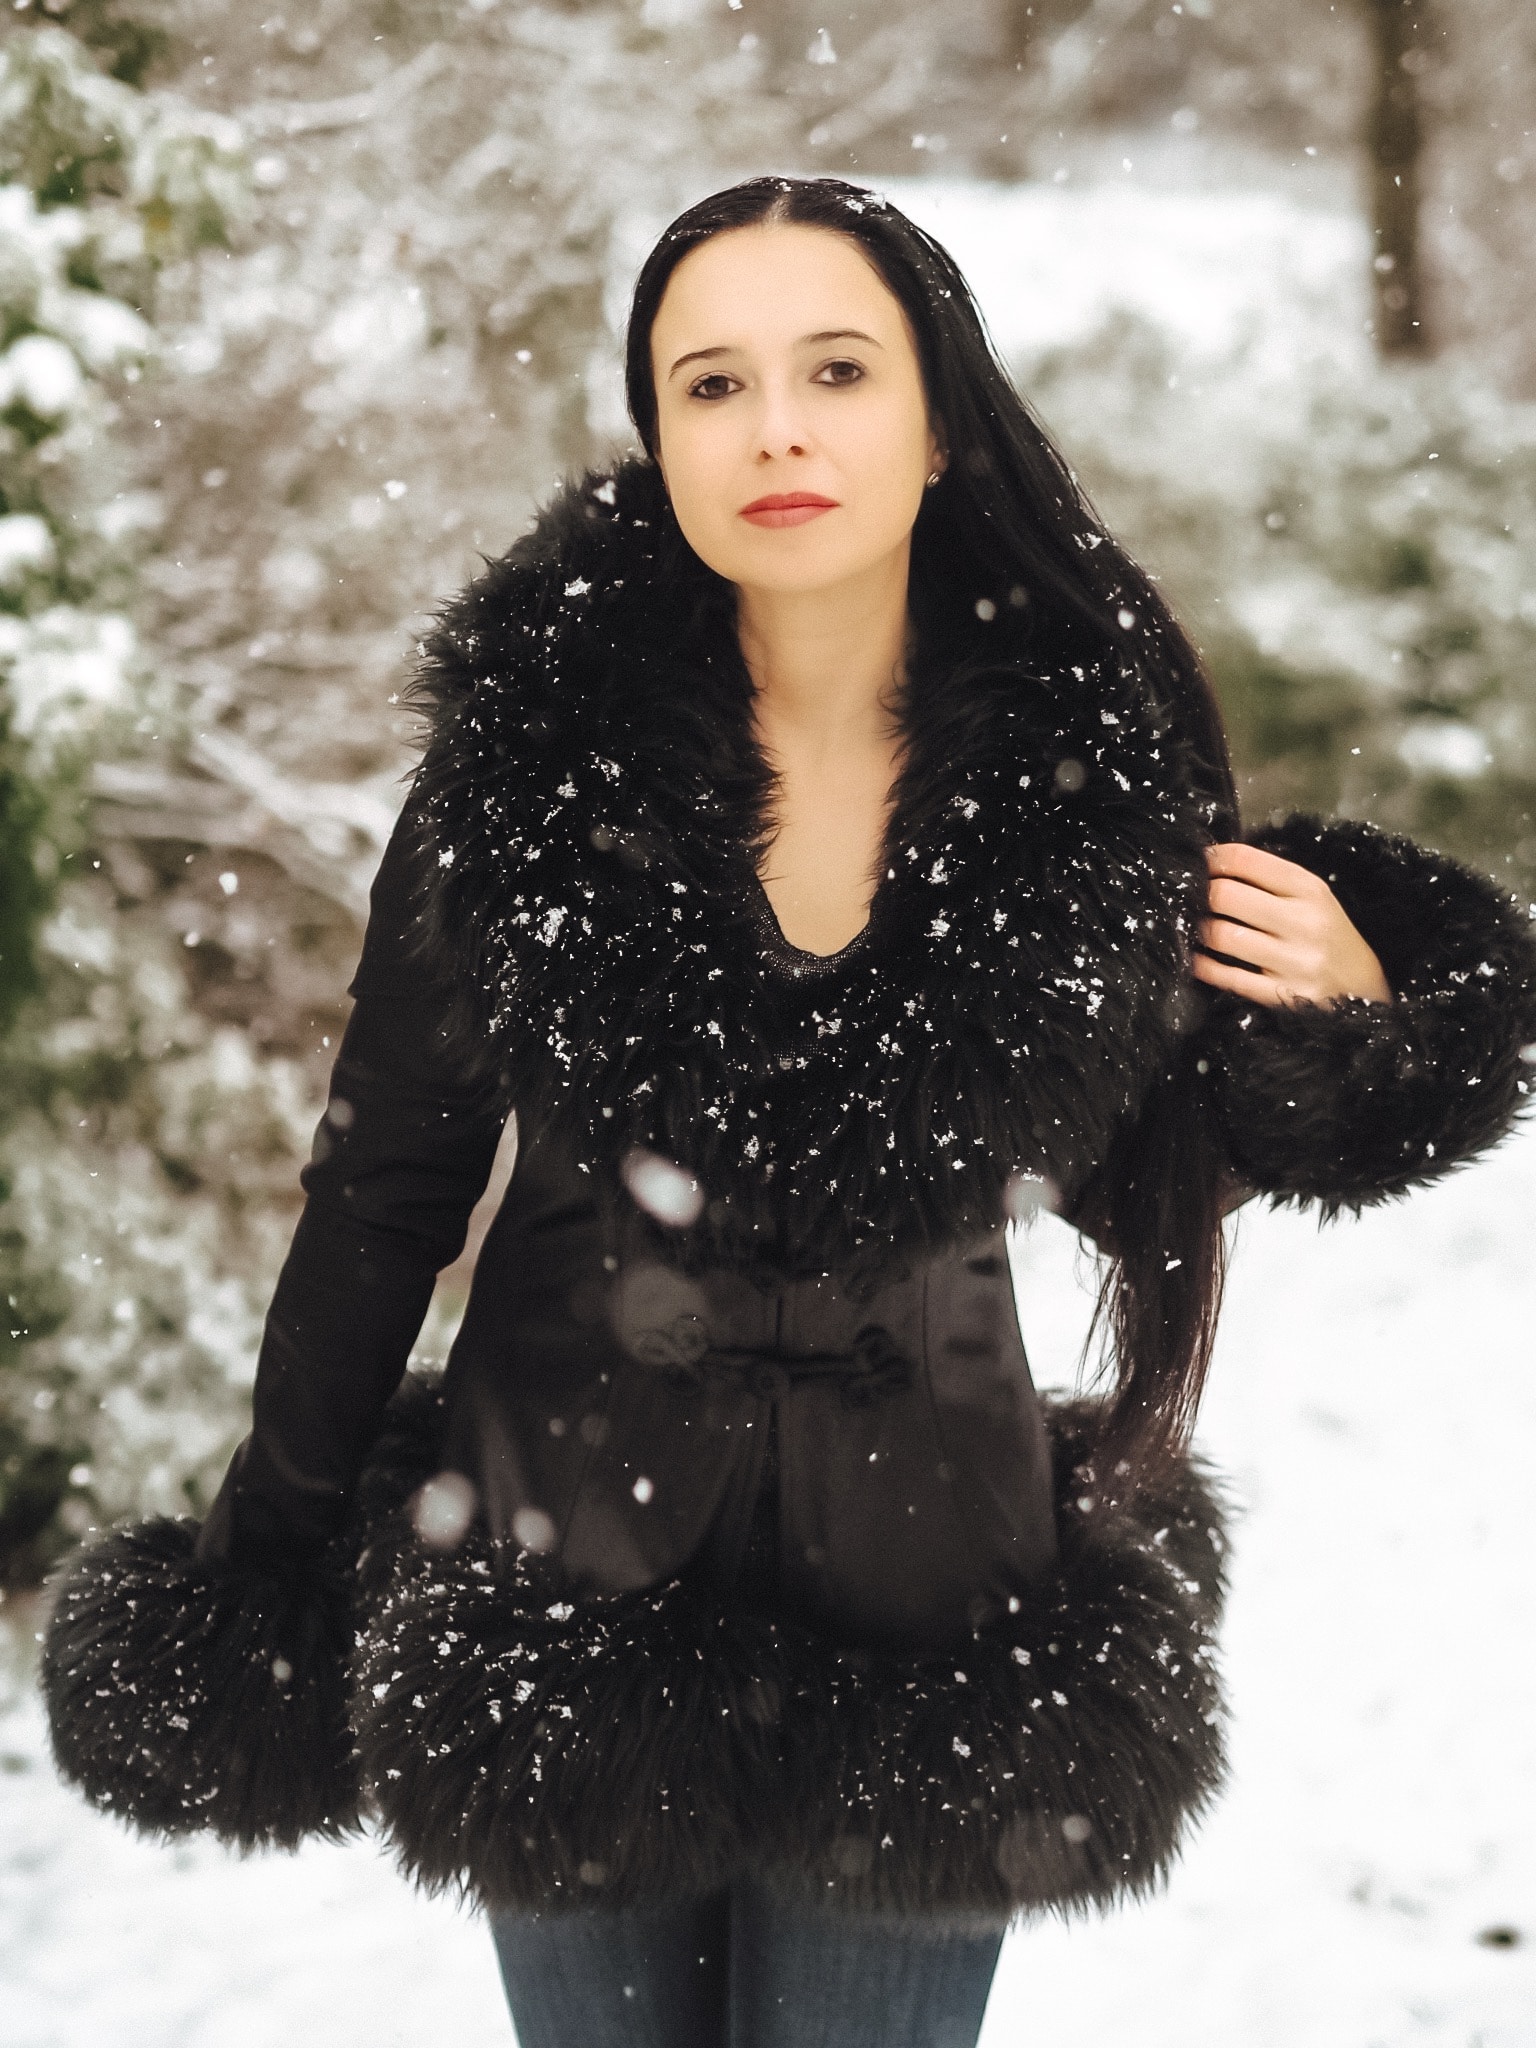 Meine Zarenjacke von "Catwalk Collection London" passt ins Schneegestöber. Heute möchte das schöne Kleidungsstück mit russischer Geschichte näher zeigen.